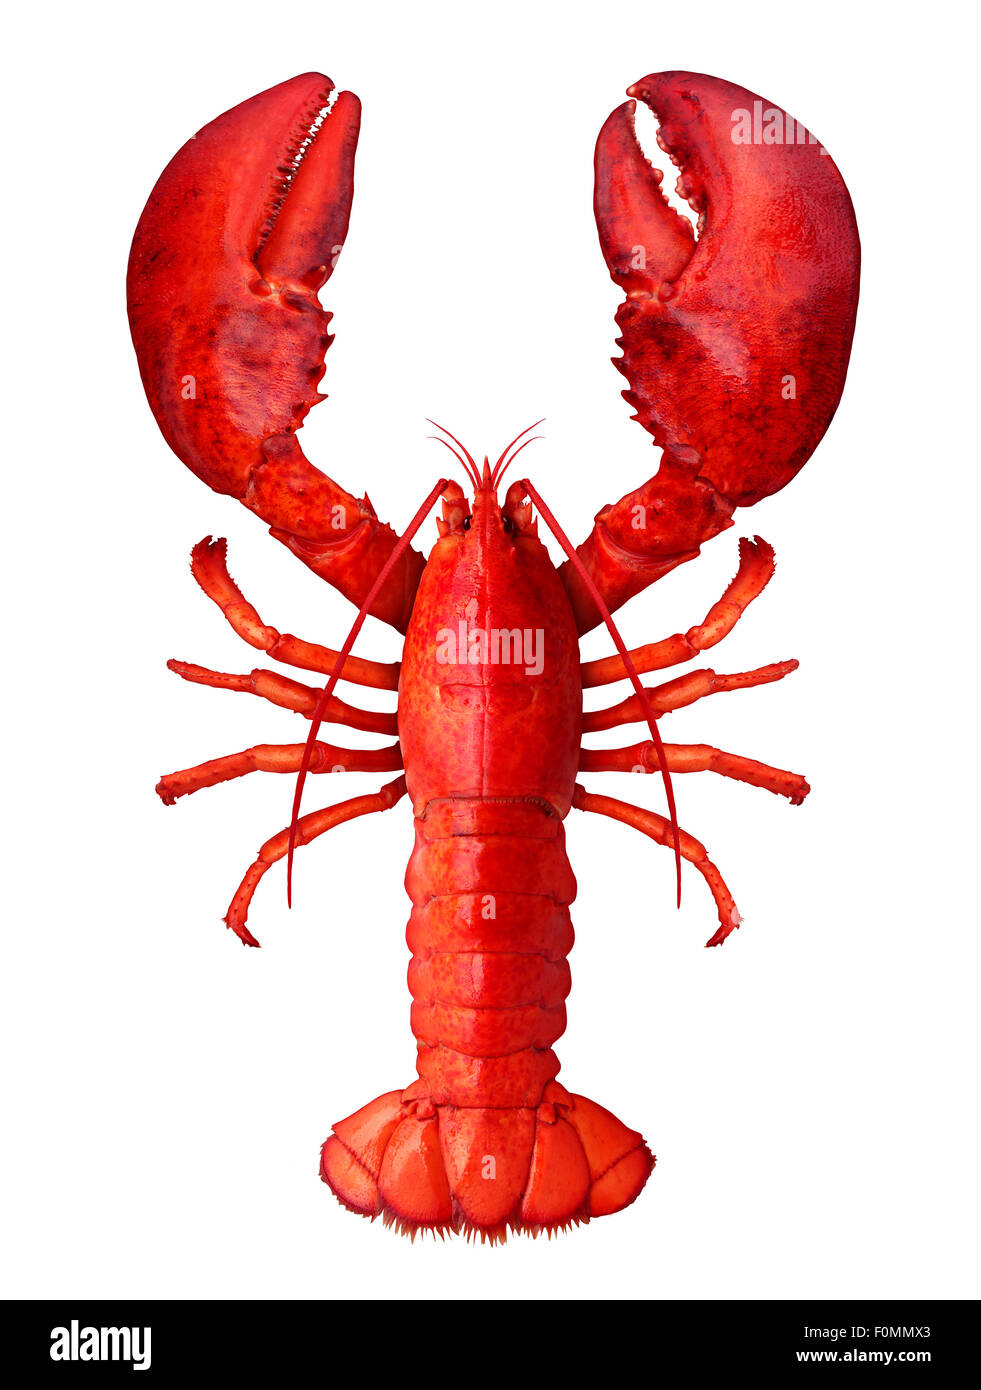 lobster crustacean